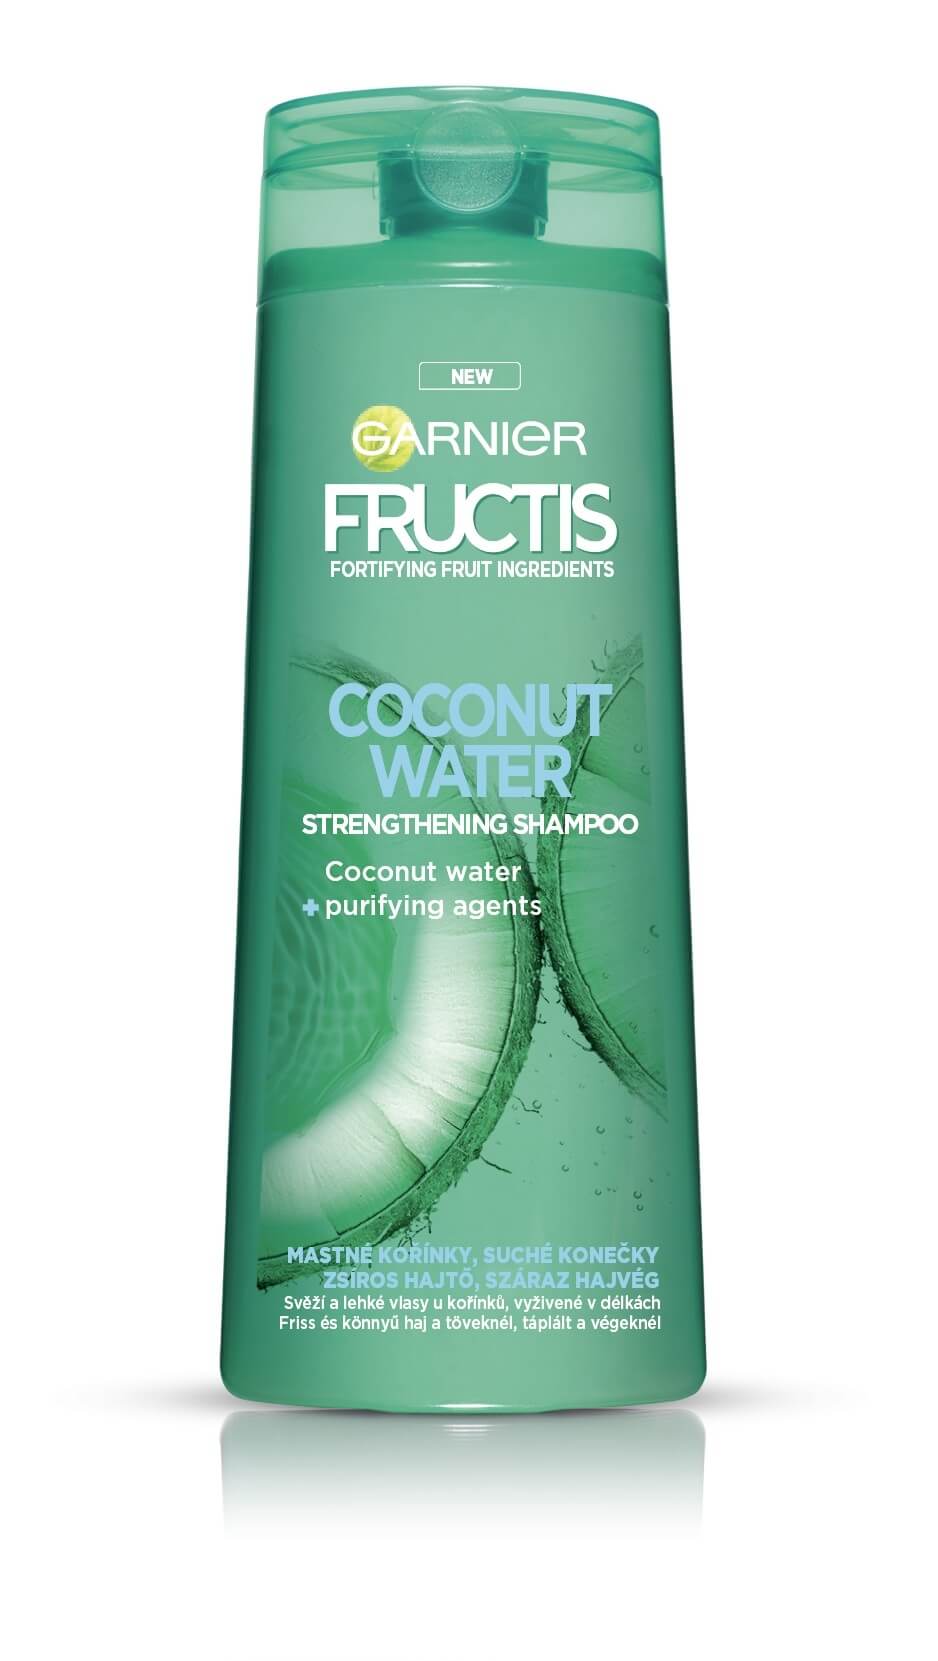 Garnier Posilňujúci šampón na mastné korienky vlasov Coconut Water ( Strength ening Shampoo) 400 ml + 2 mesiace na vrátenie tovaru